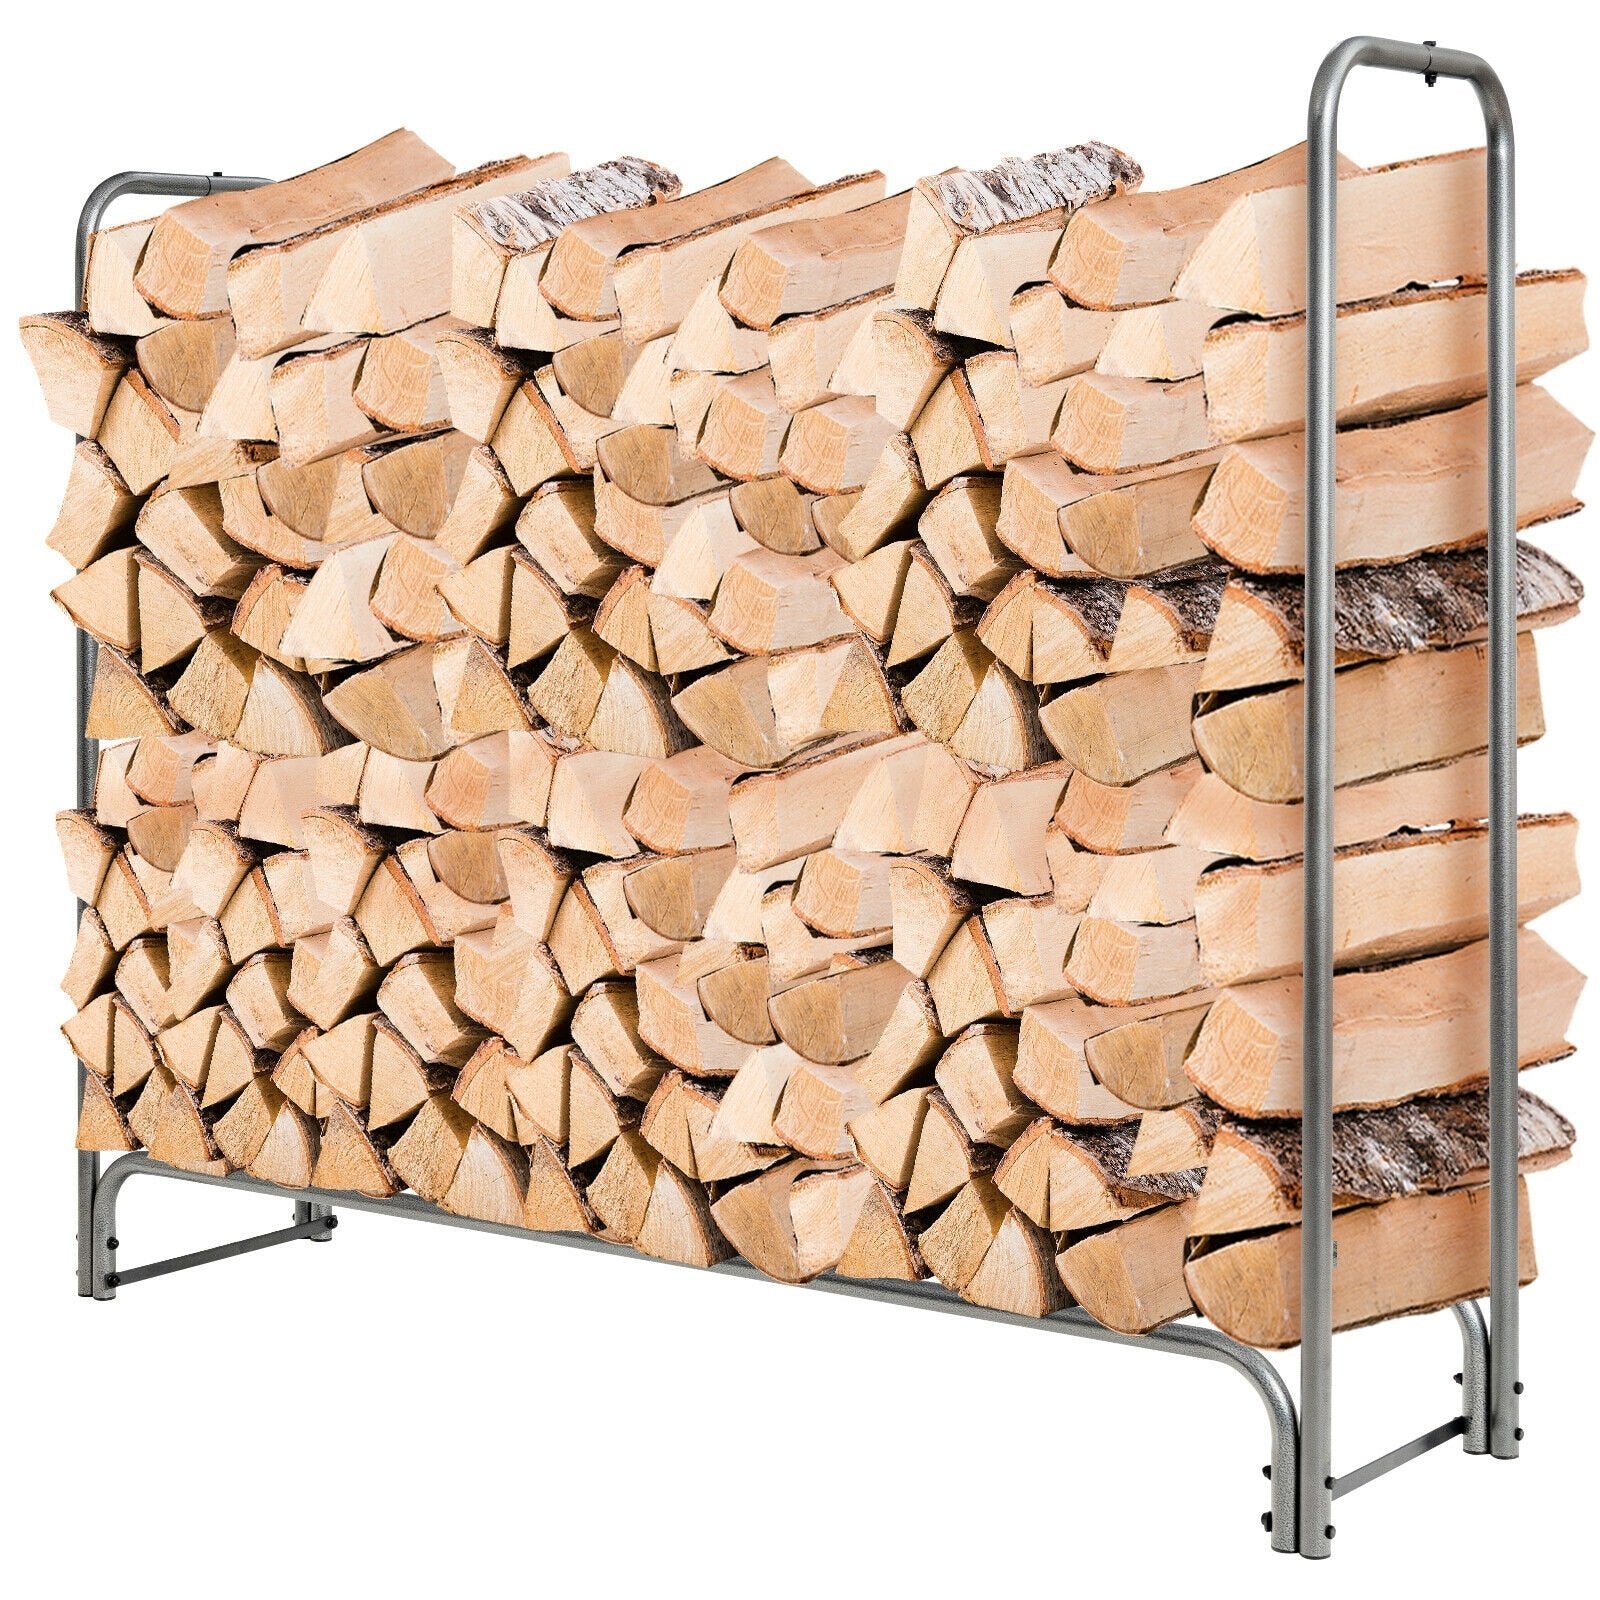 4 Feet/5 Feet/6 Feet/8 Feet Firewood Storage Log Rack-5 Feet, Black Log Storage   at Gallery Canada